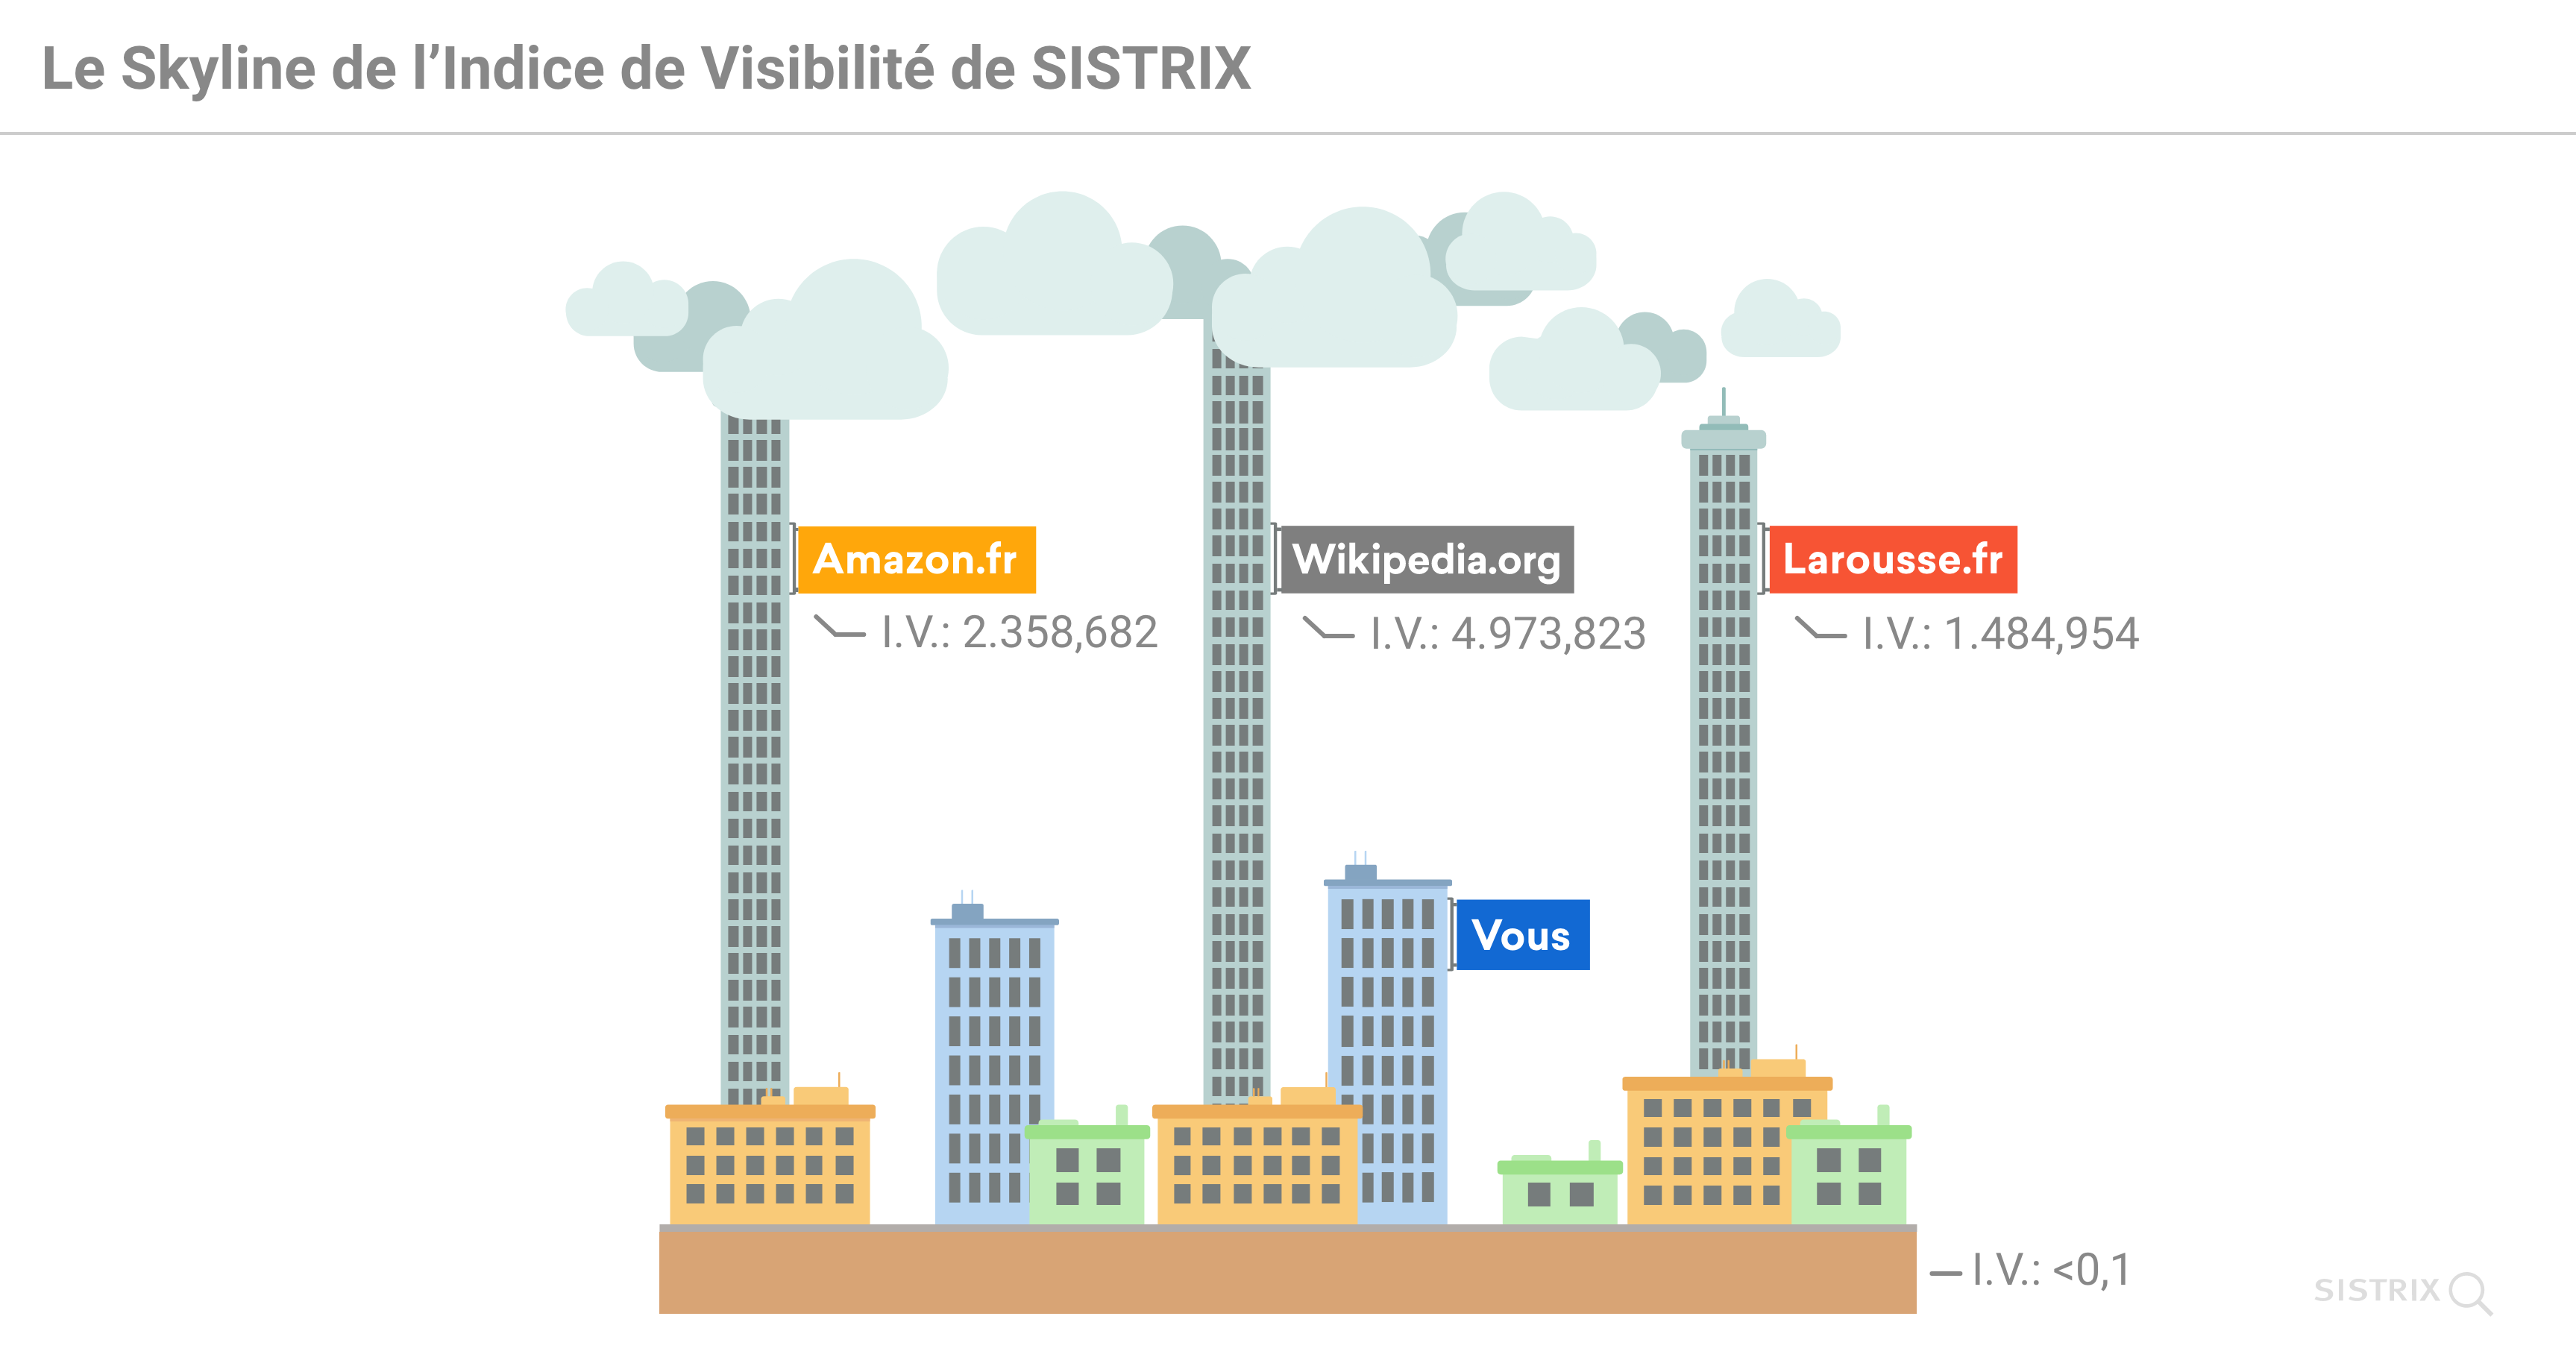 Le Skyline de l'Indice de Visibilité en France avec amazon.fr, wikipedia.org et Larousse.fr